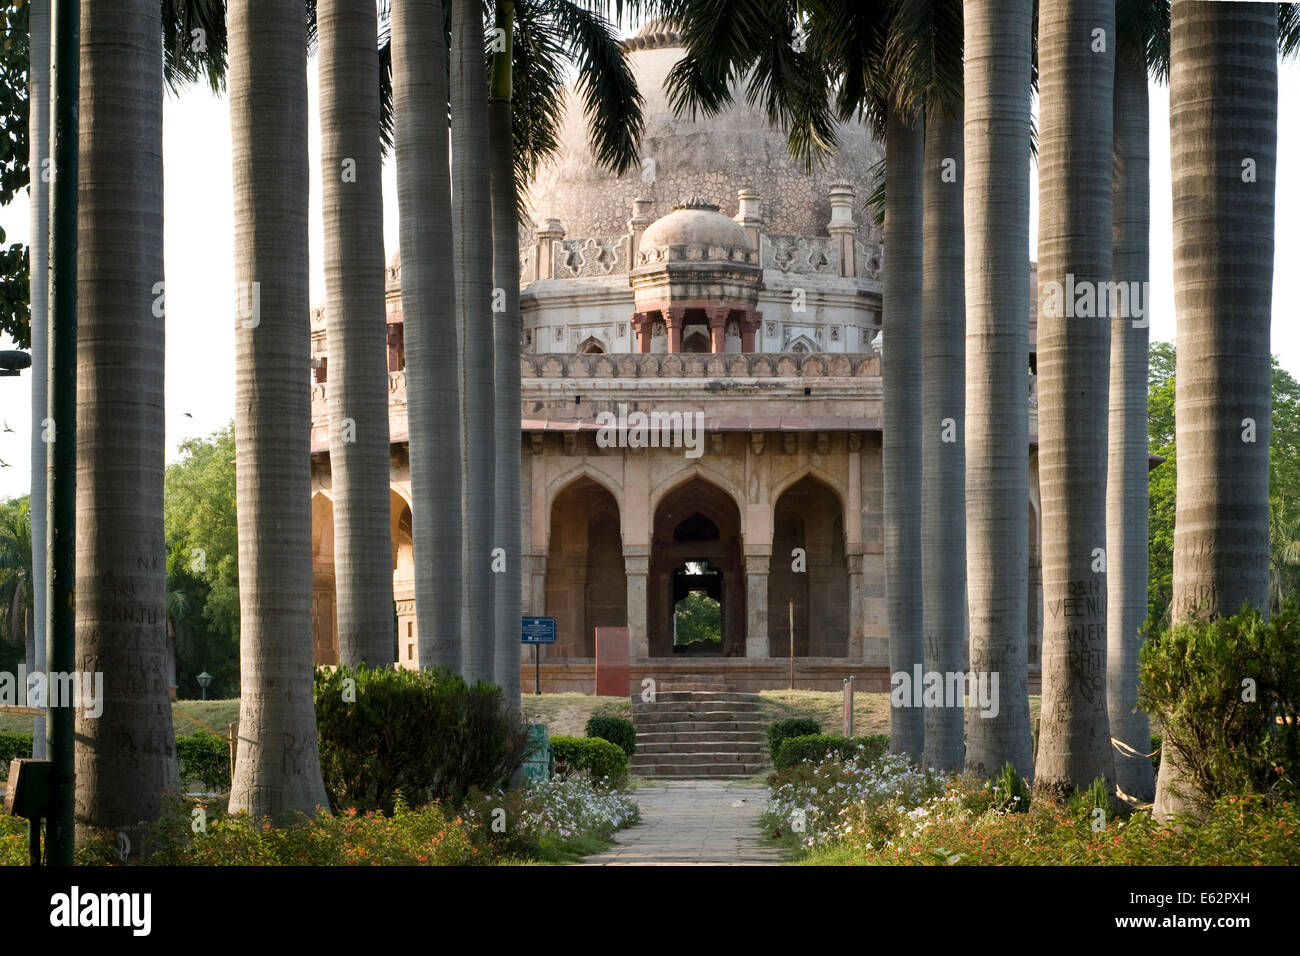 Tomb of Sikandar Lodi in New Delhi, India.  Lodhi Gardens in Delhi. Stock Photo